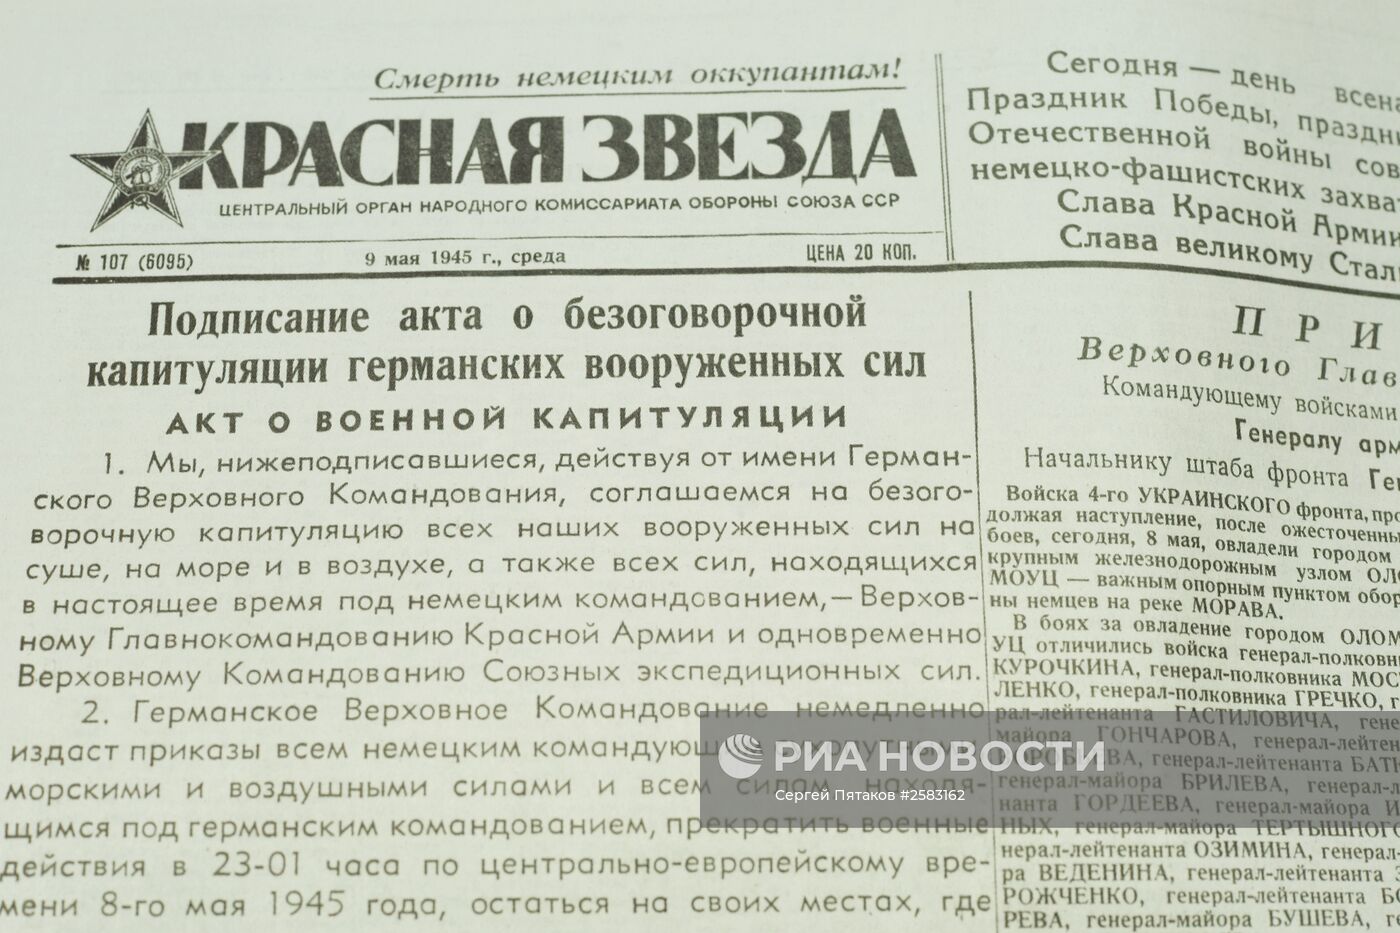 Фотоматериалы и публикации газеты "Красная Звезда" периода Великой Отечественной войны